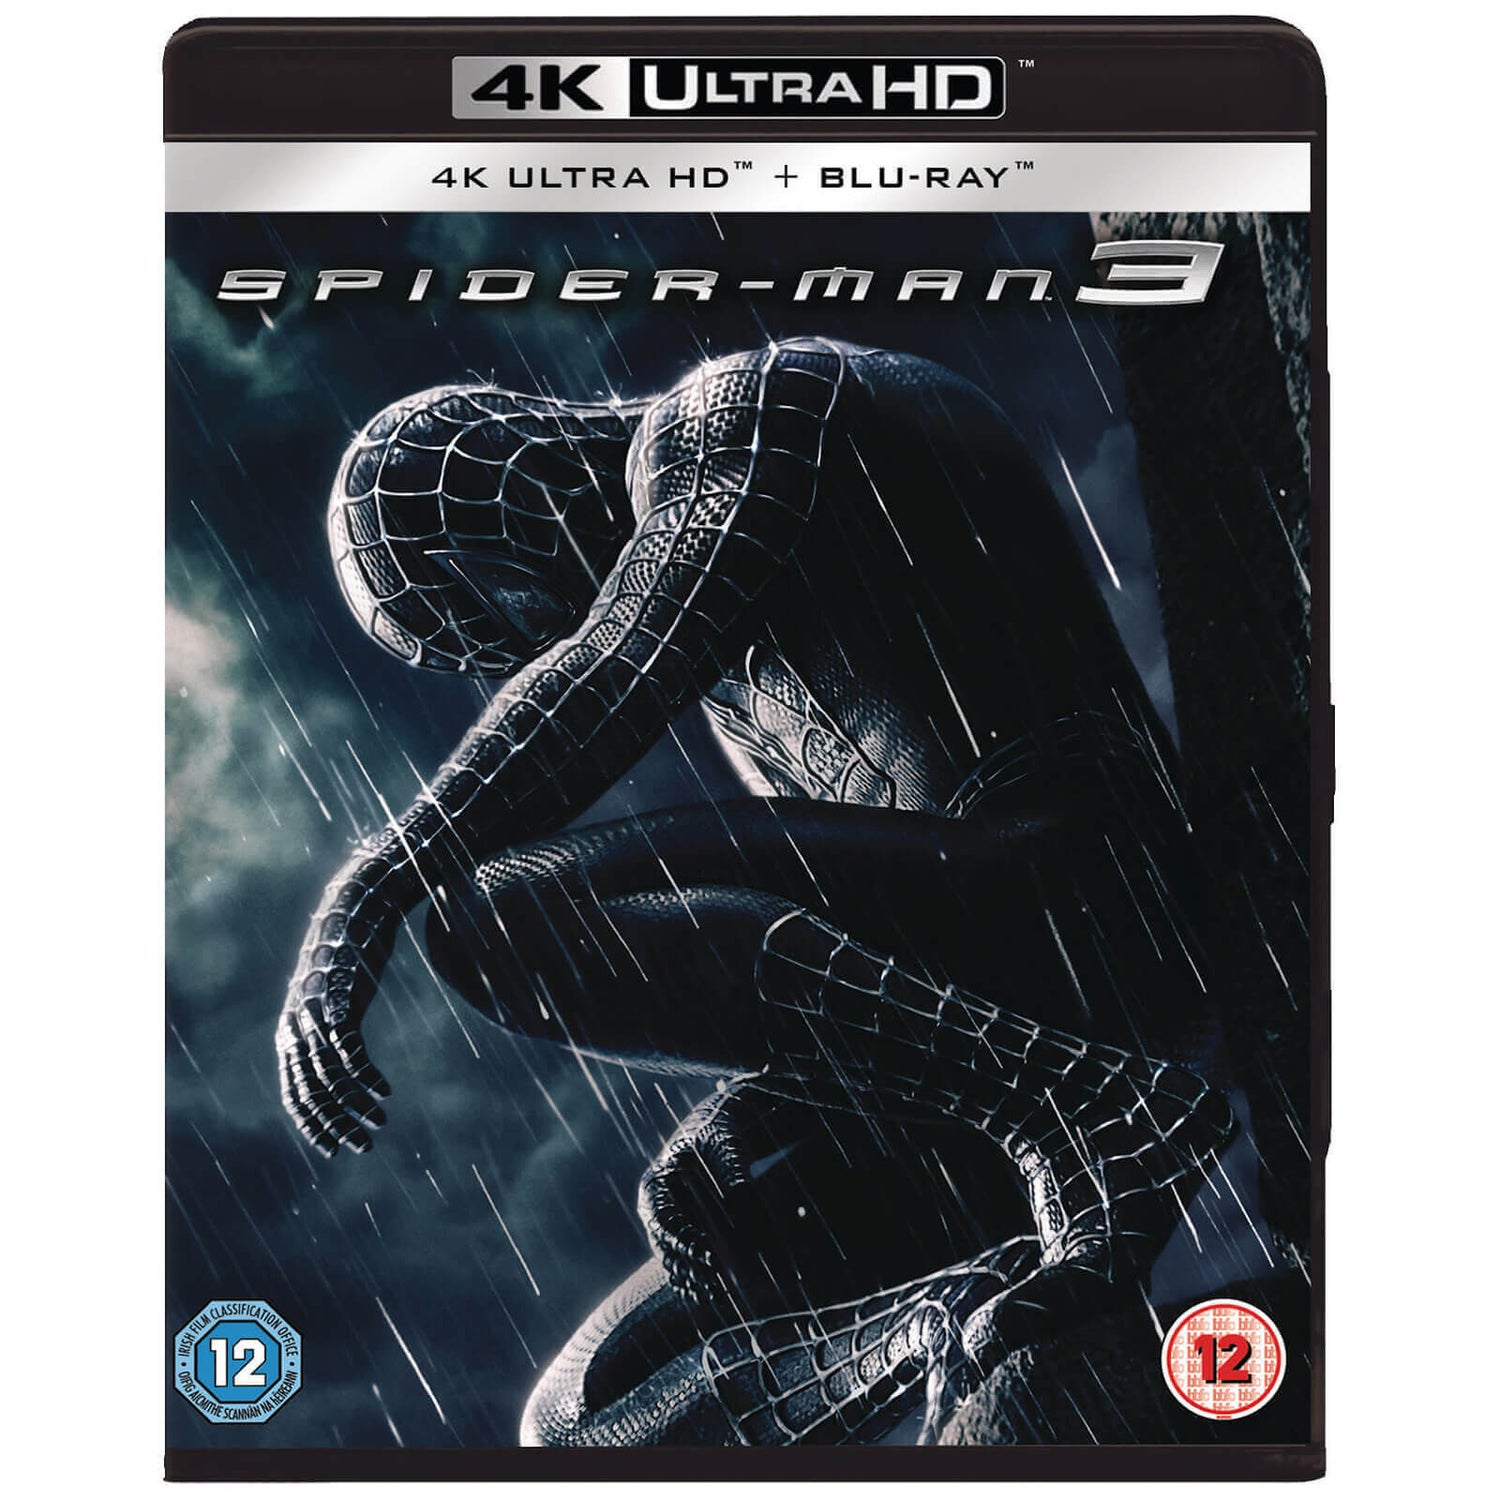 Spiderman 3 (2007) - 4K Ultra HD